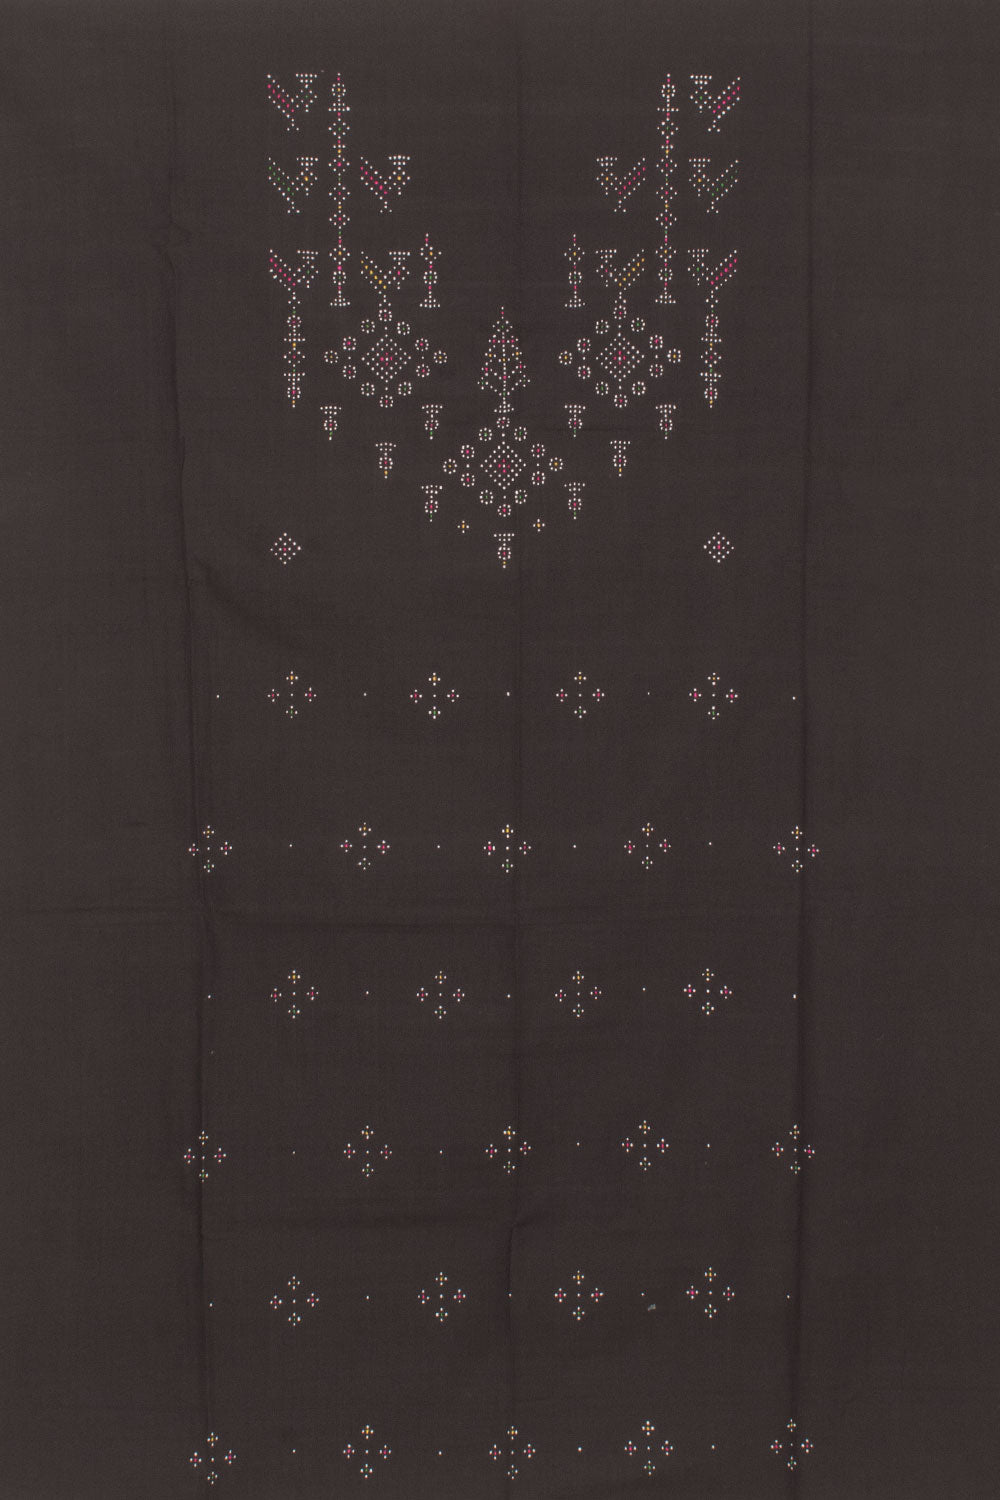 Tangaliya Cotton 2-Piece Salwar Suit Material 10058600